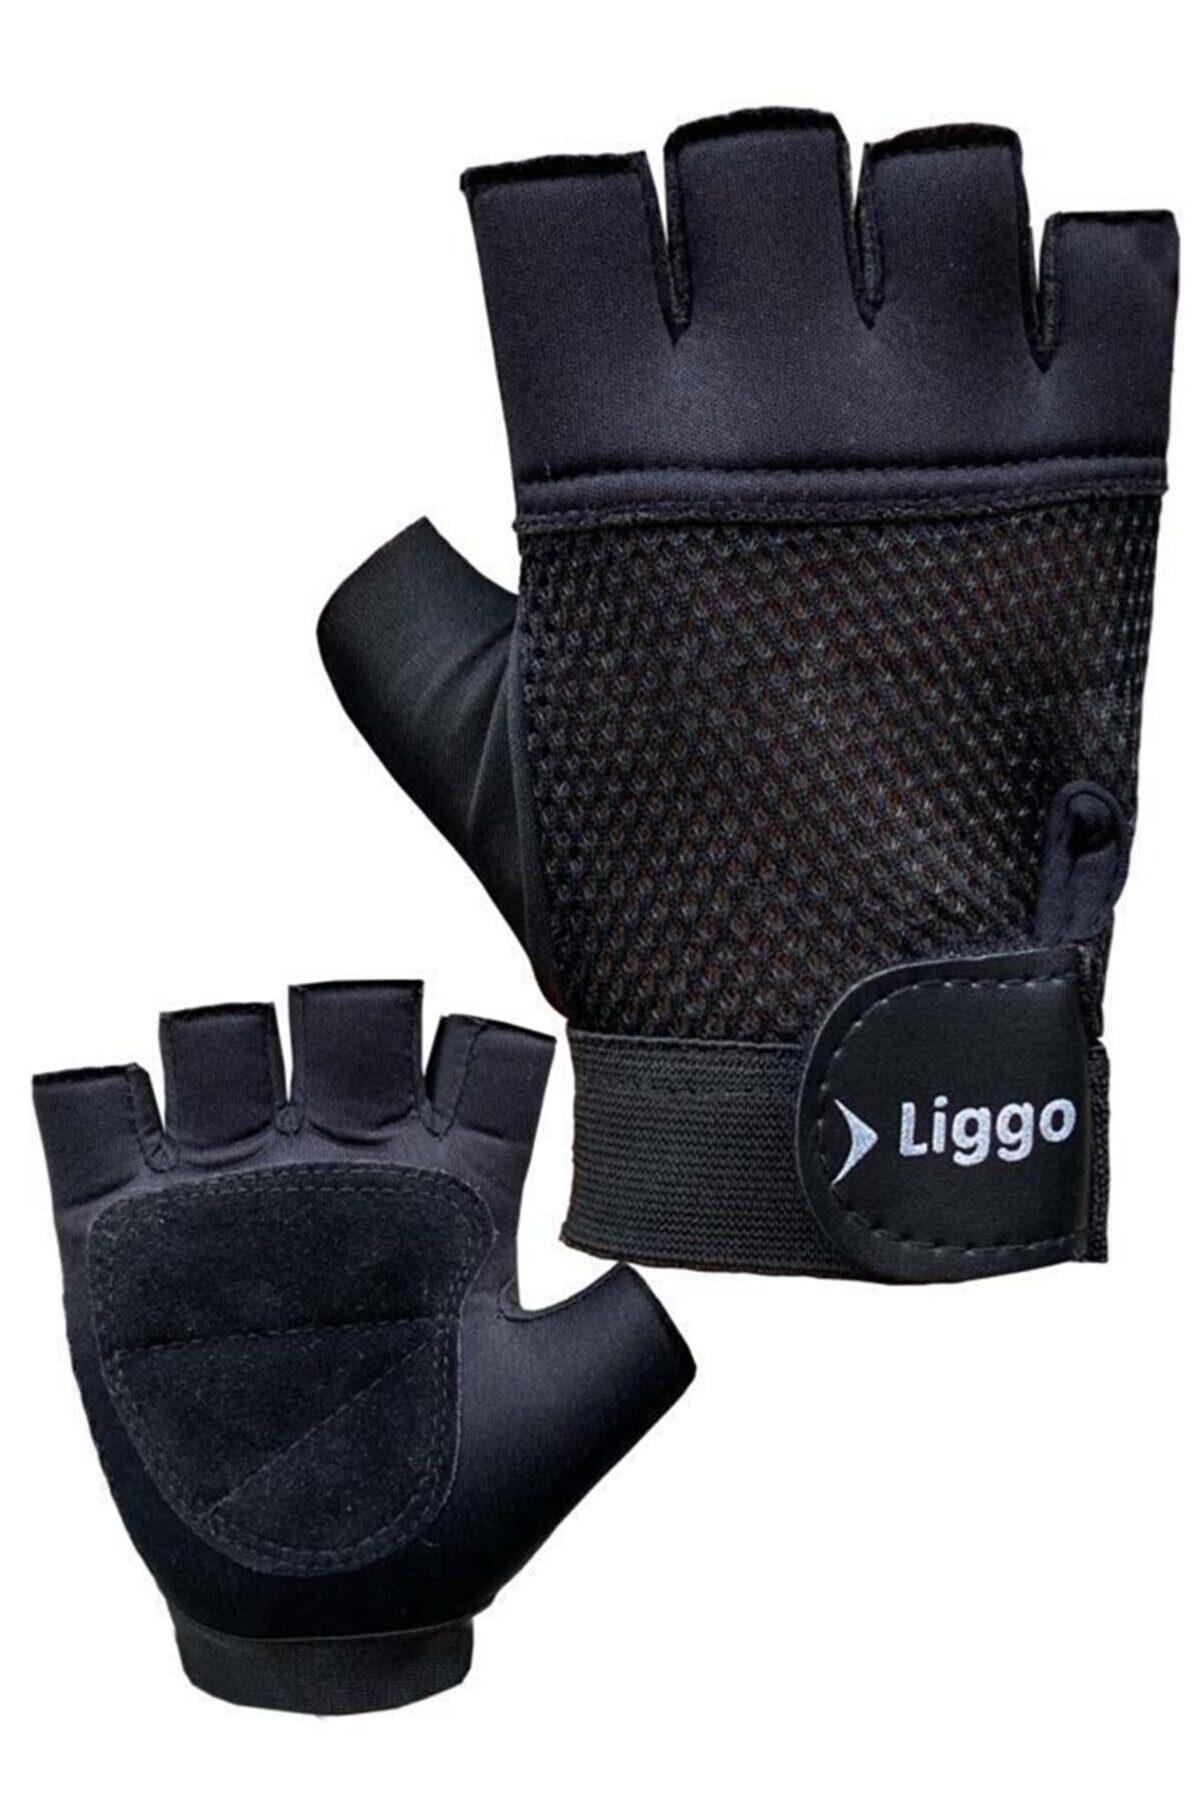 Liggo Hyper Bilek Cırtlı Ağırlık Eldiveni Fitness Eldiveni